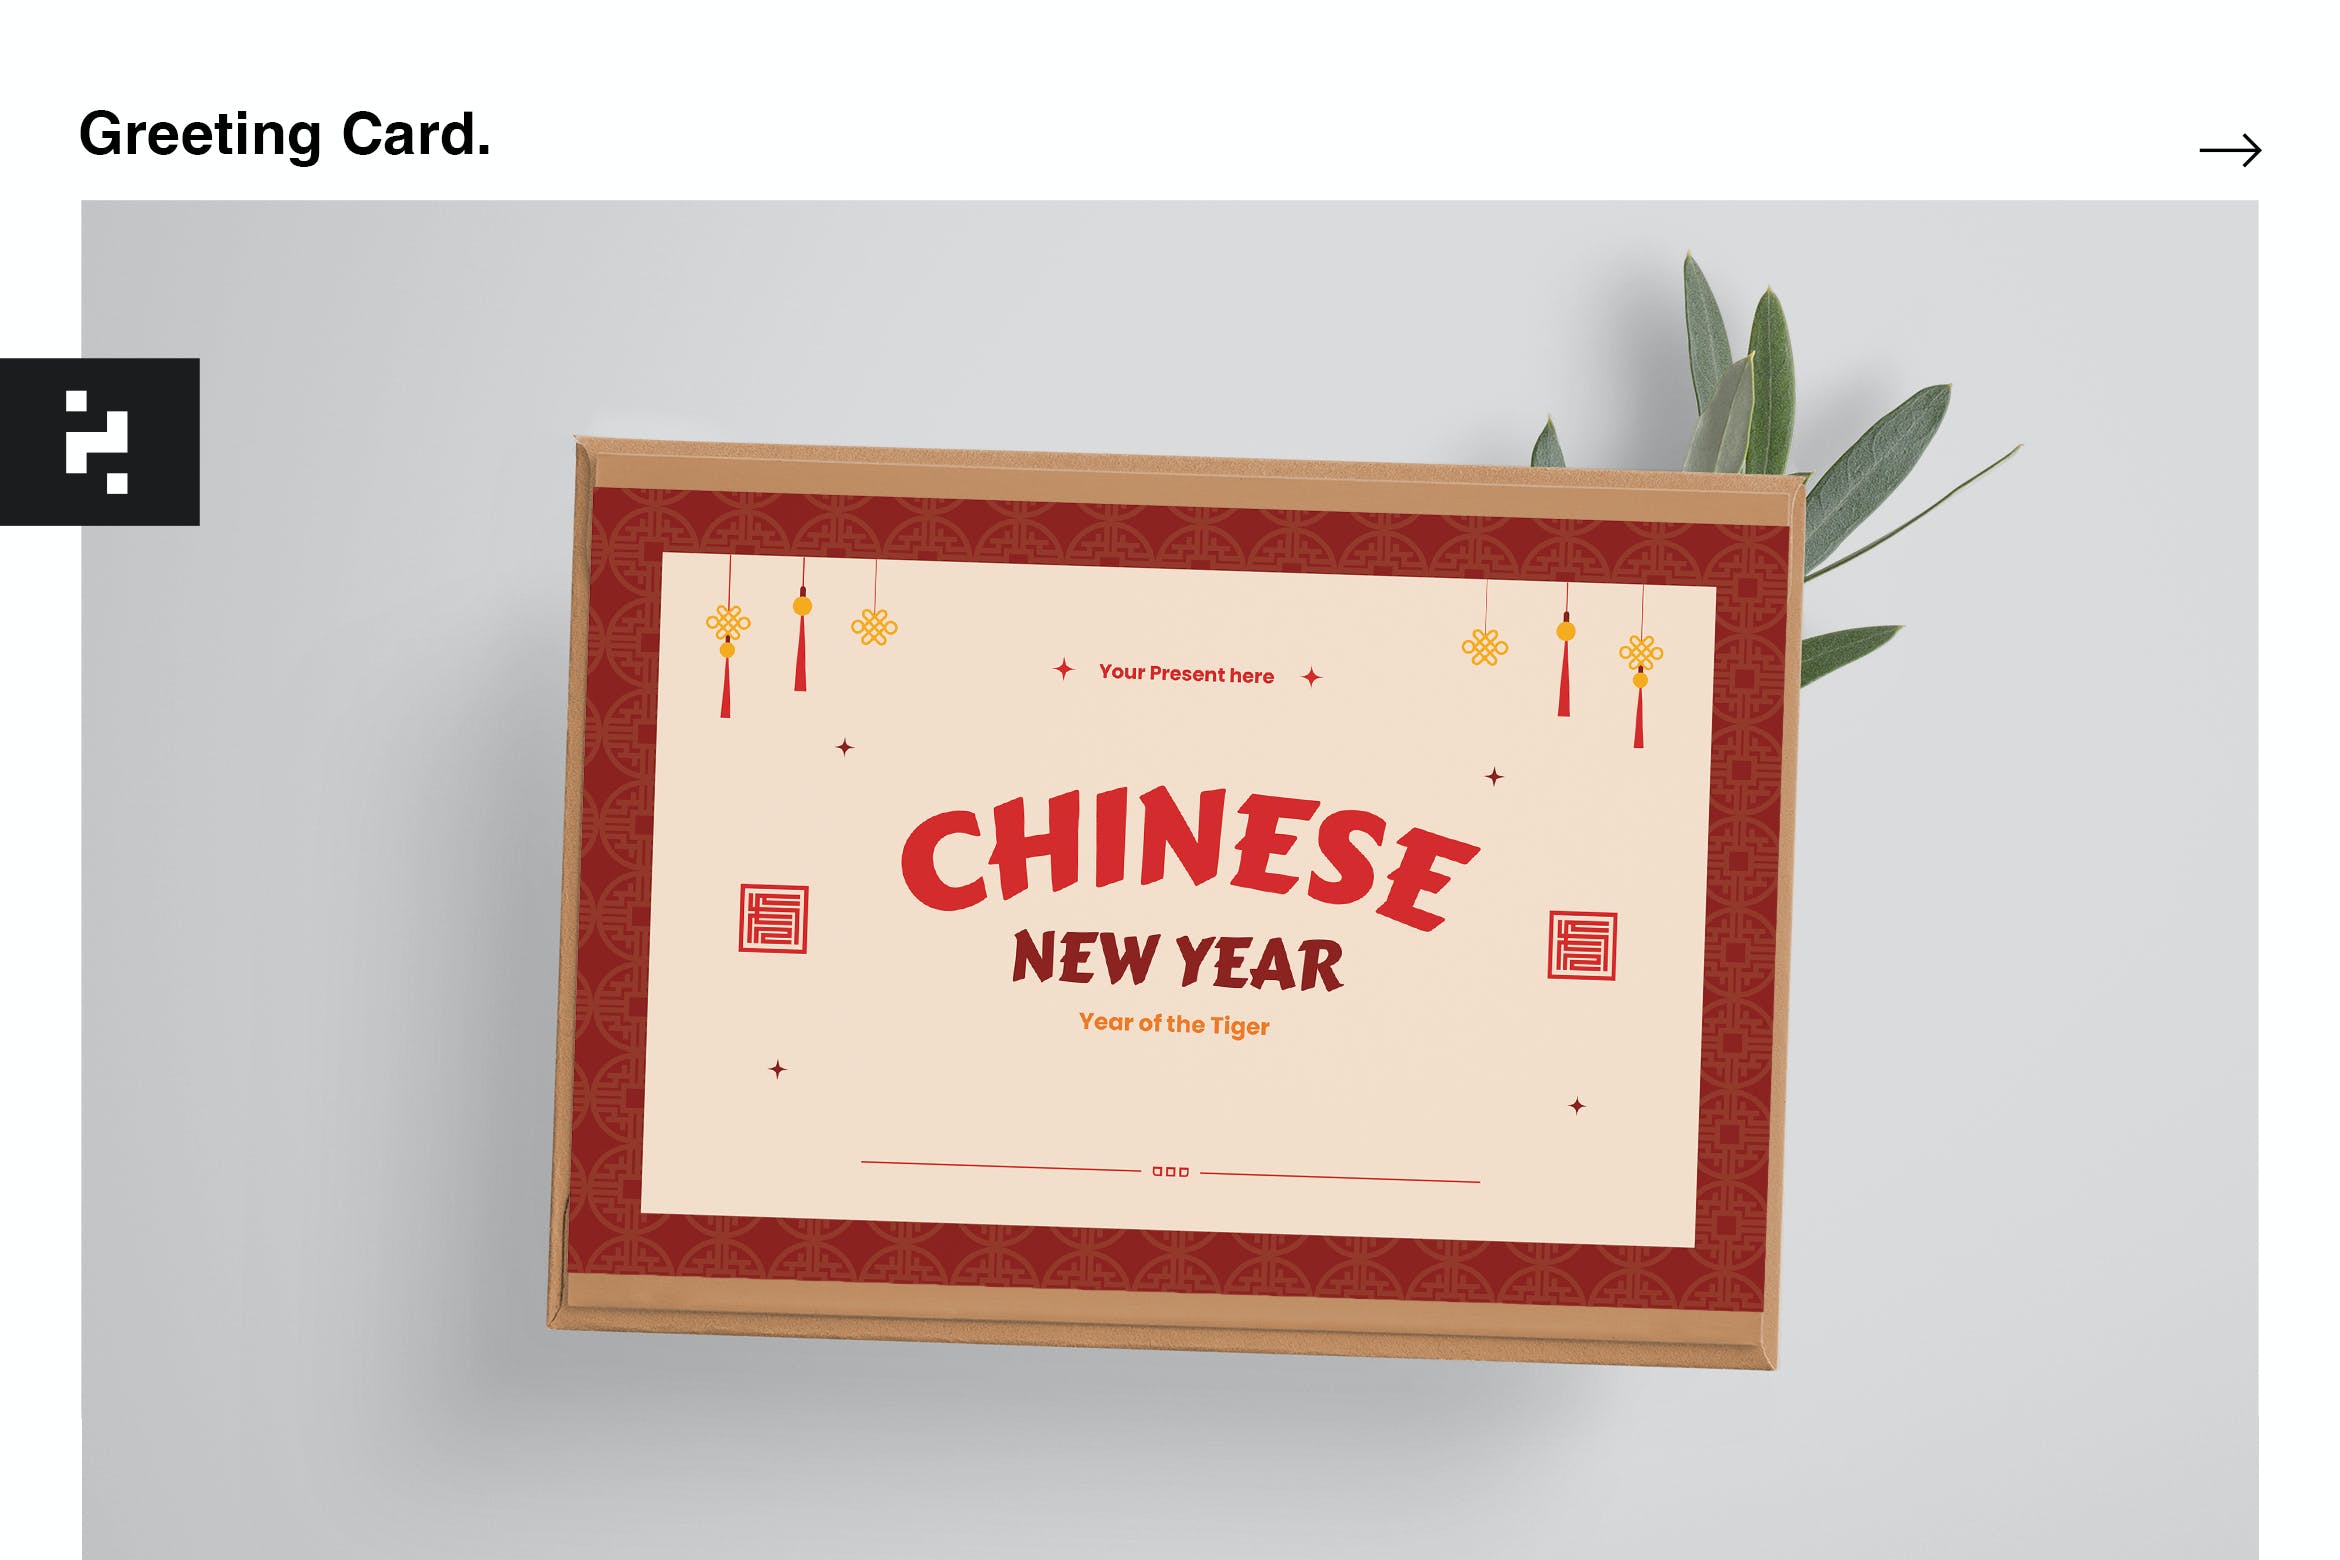 中国新年祝福贺卡设计模板 Chinese New Year Greeting Card Template 设计素材 第1张